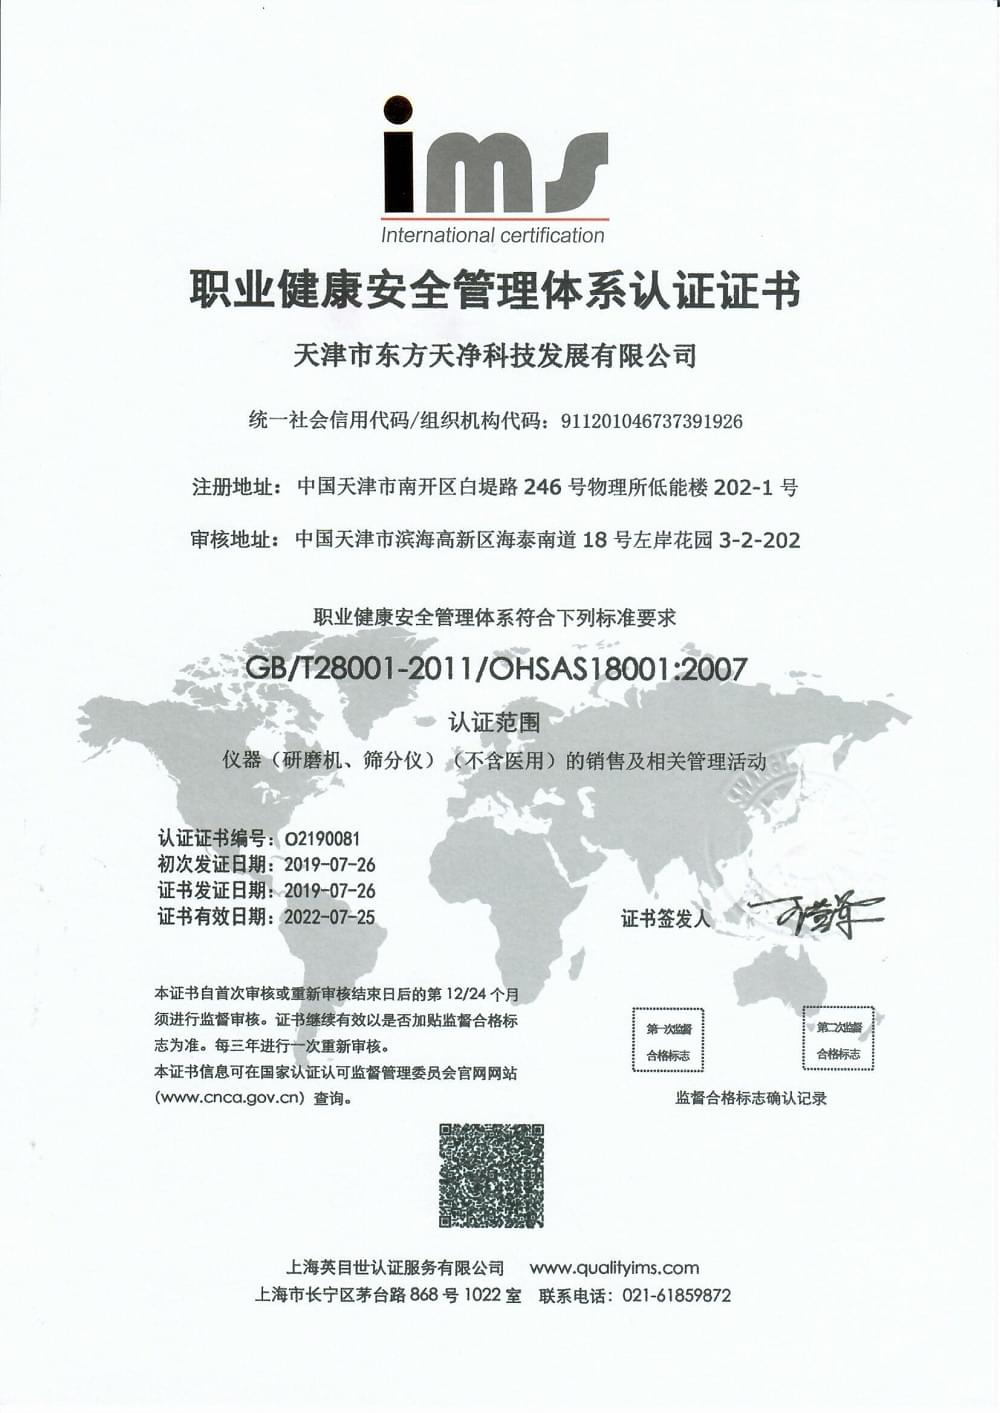 
产品OHSAS 18001职业健康安全管理体系认证